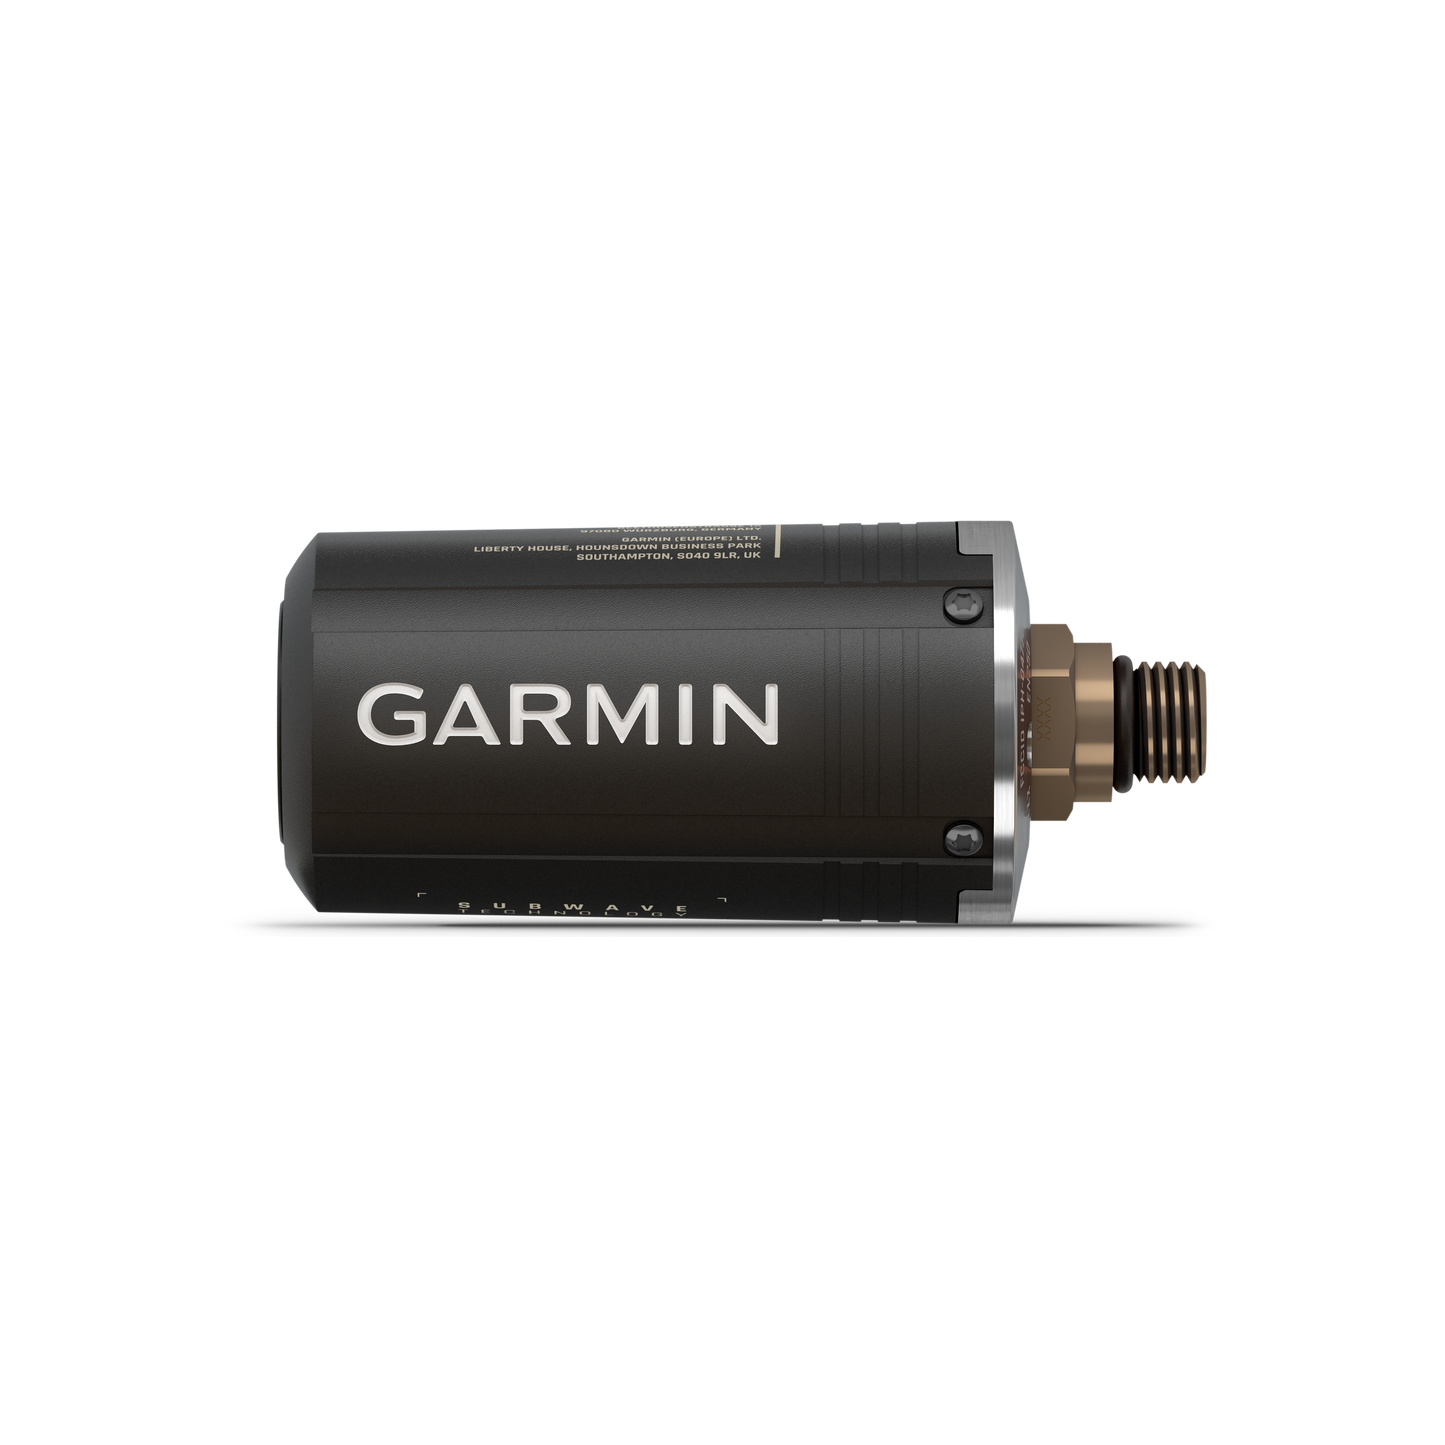 Garmin Descent™ Mk3i – 51mm Carbon Grey DLC Titanium + Descent T2 Transceiver